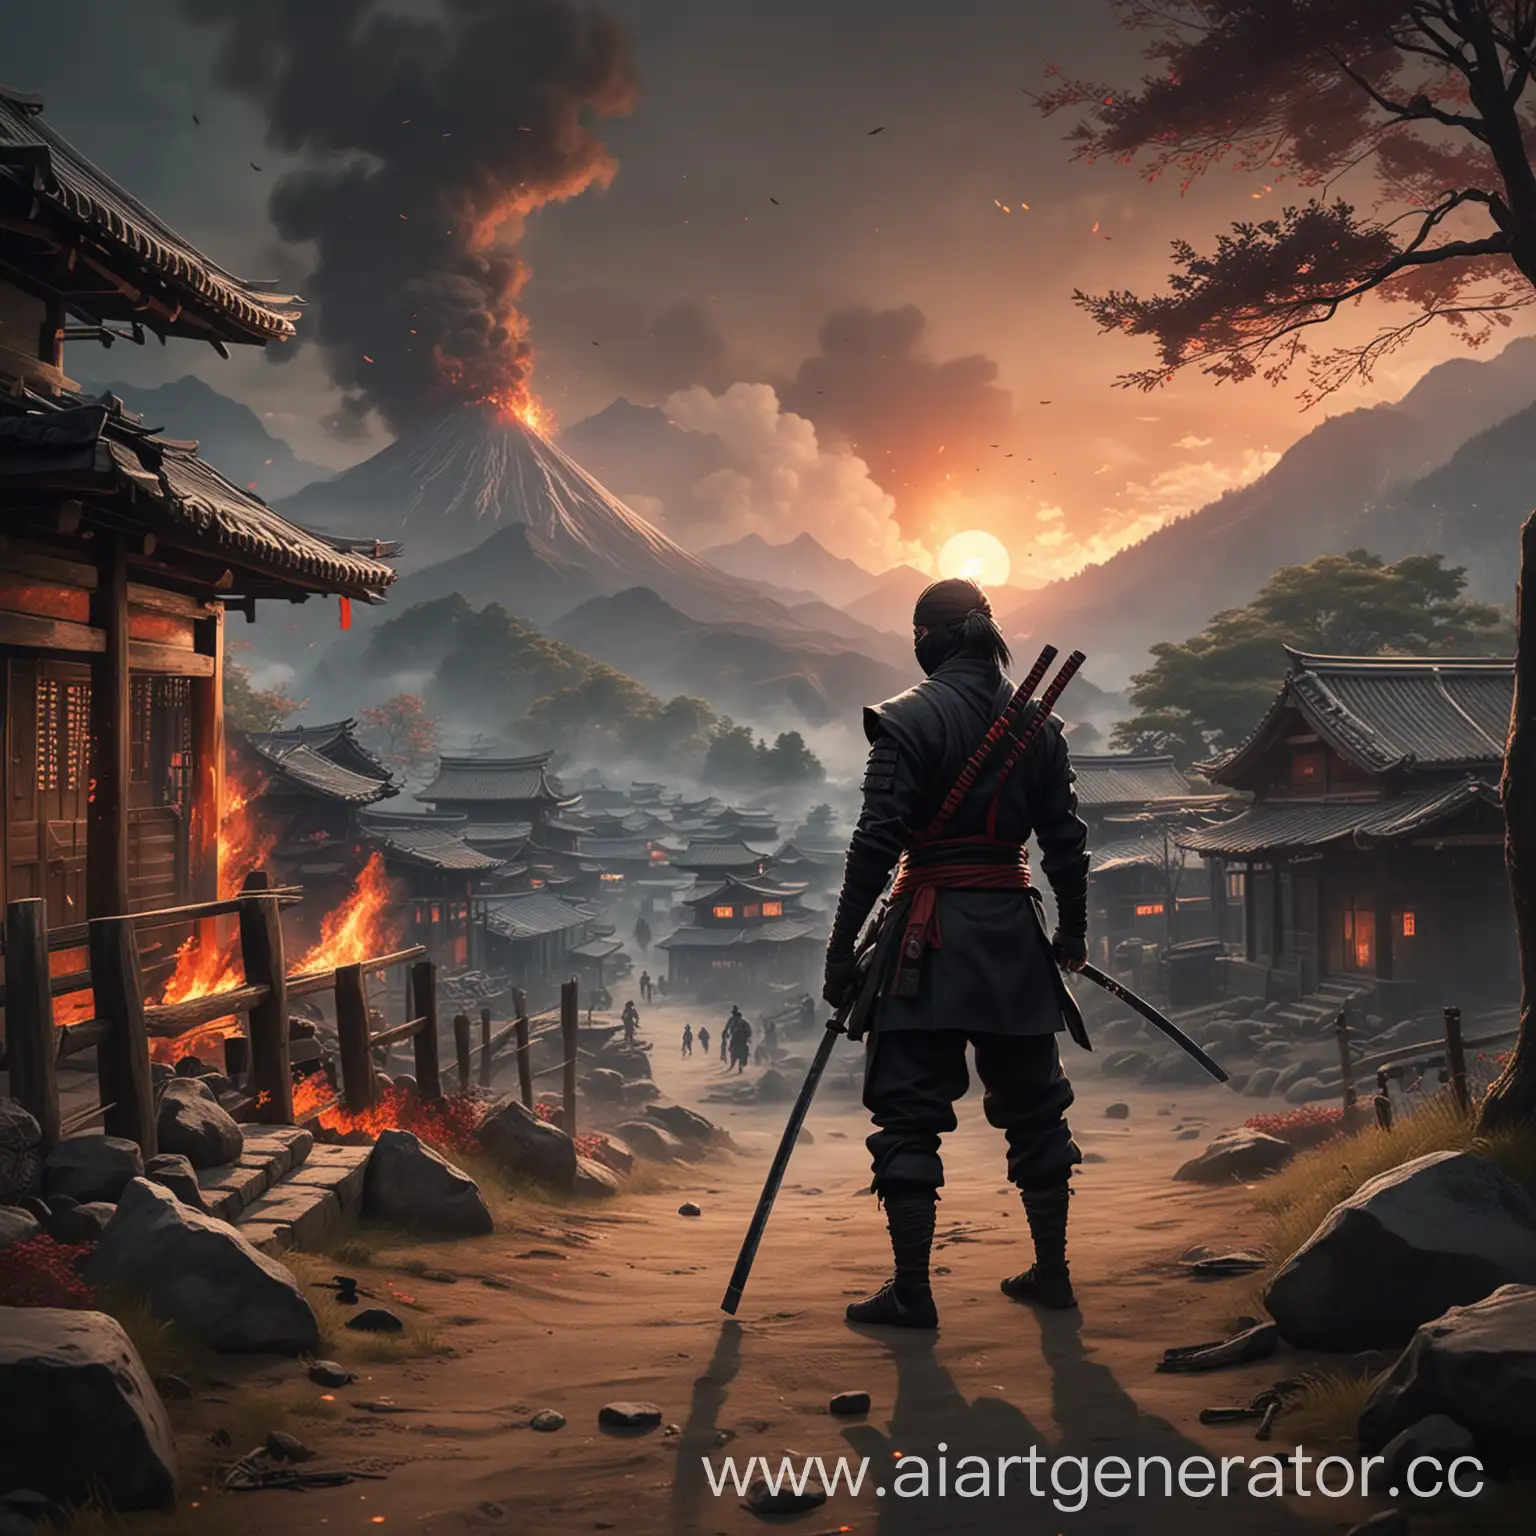 обложка игры где ниндзя стоитс катаной на горе и смотрит на горевшую японскую деревню реализм